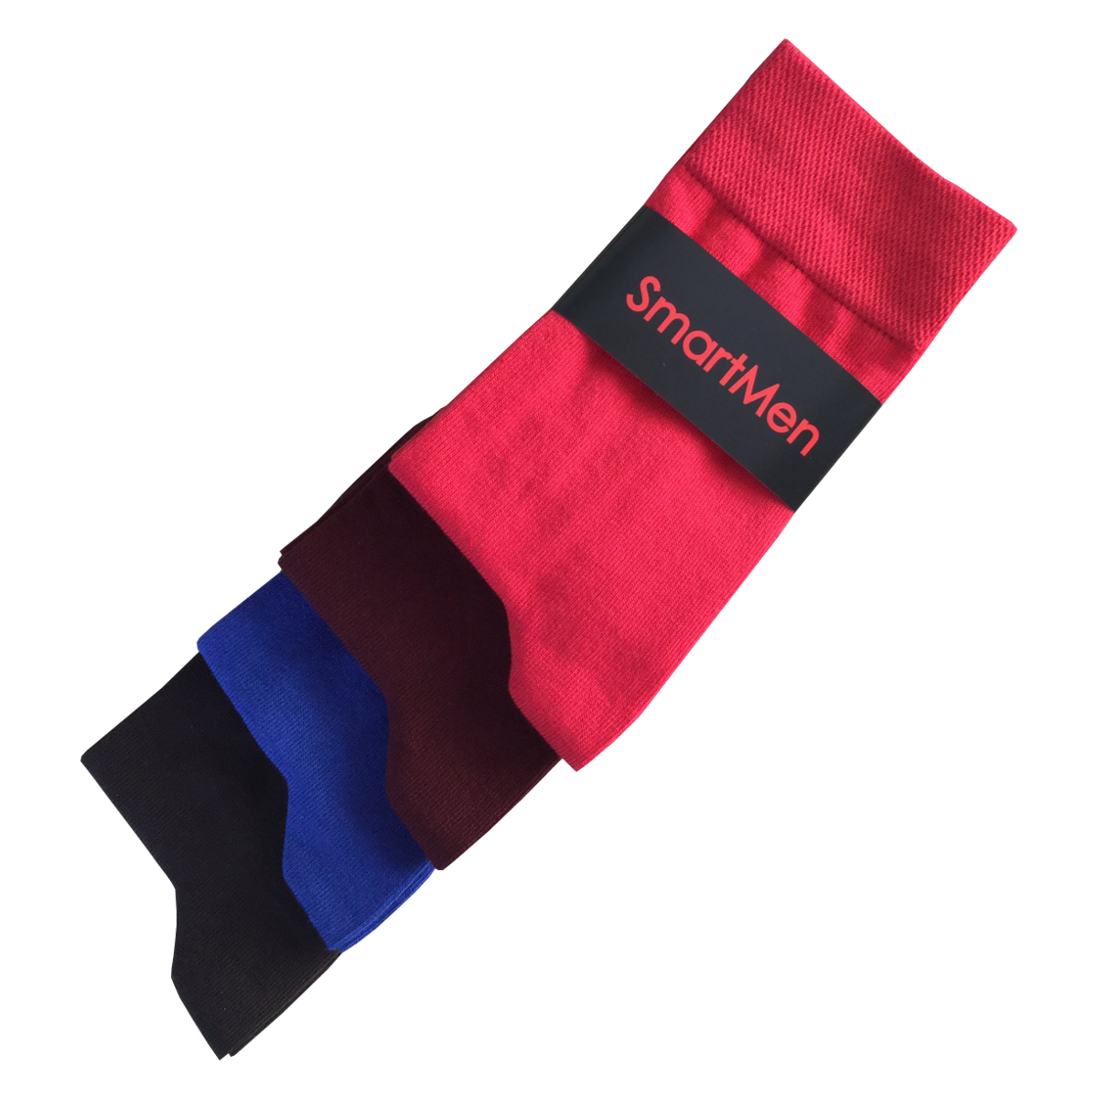 Nová kolekce pánských ponožek SmartMen